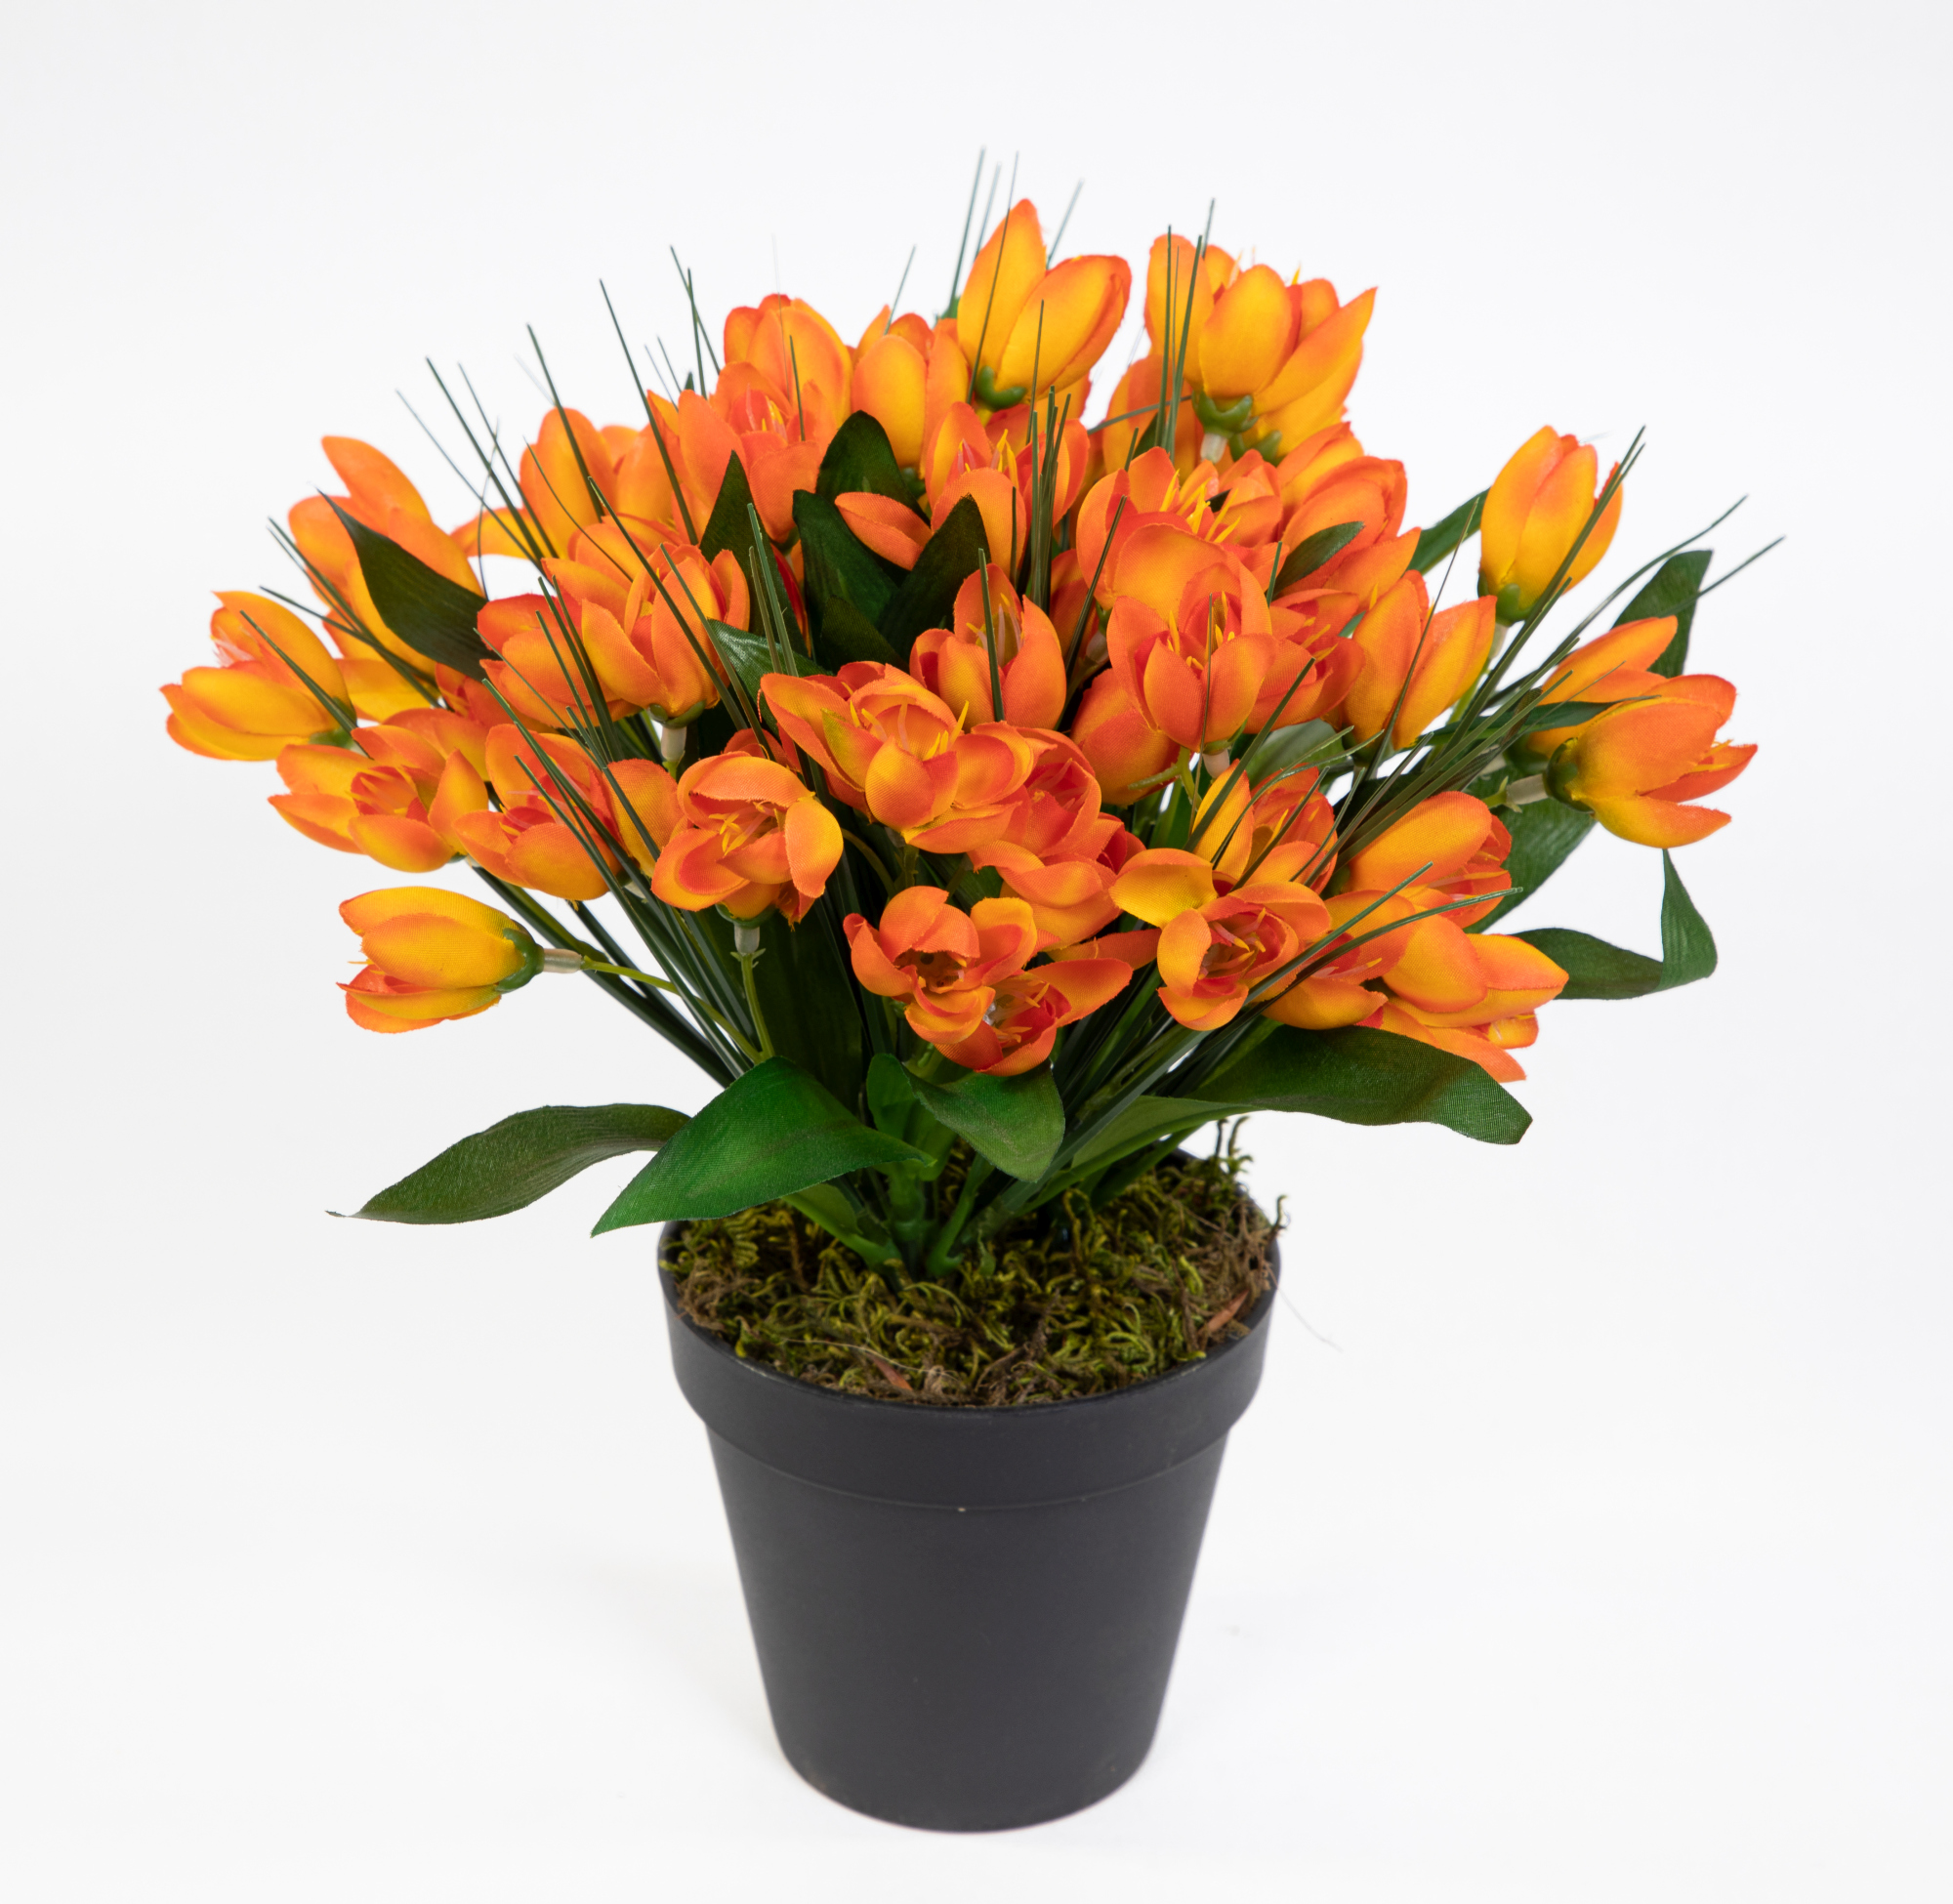 Krokusbusch 28cm orange im Topf PM Kunstpflanzen Kunstblumen künstlicher Crocus Krokus Blumen